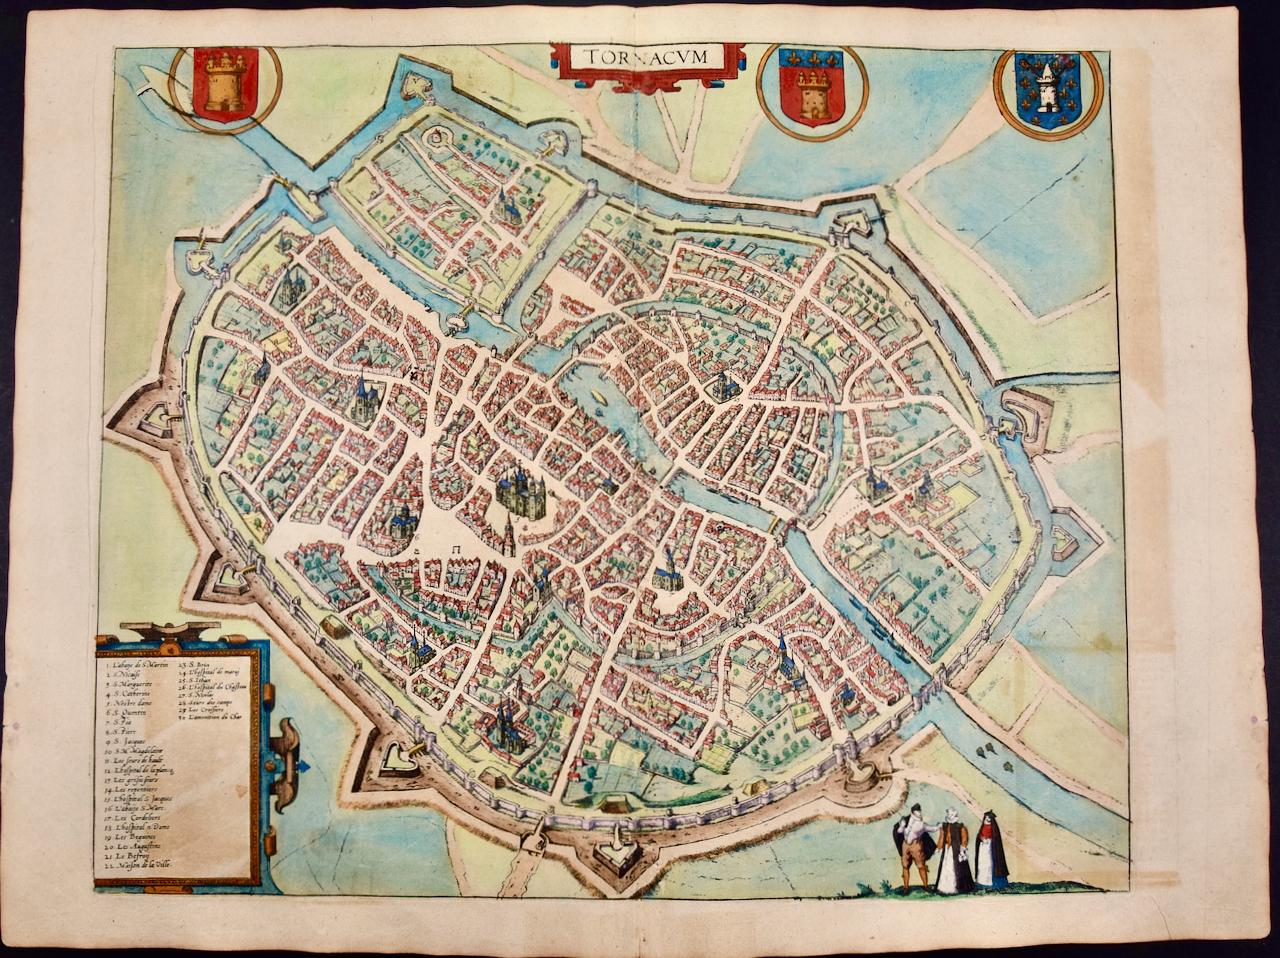 Tournai (Tournay), Belgien: Eine handkolorierte Karte aus dem 16. Jahrhundert von Braun & Hogenberg